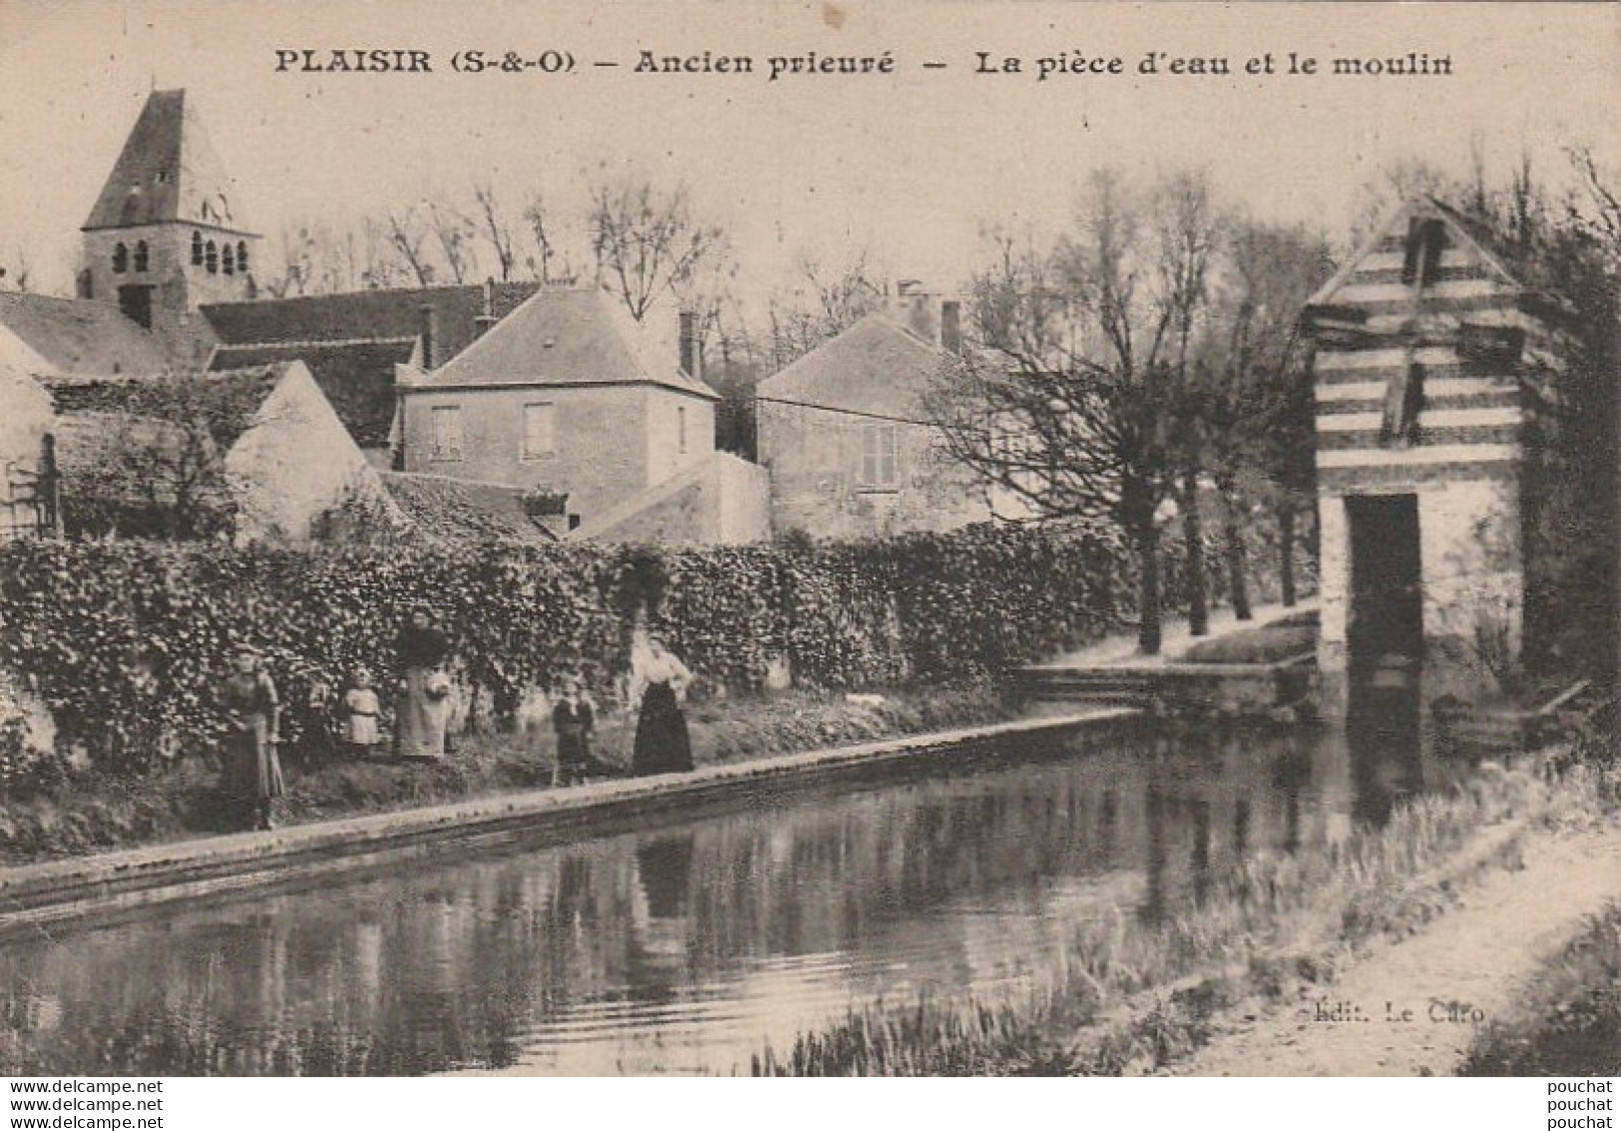 I6-78) PLAISIR - ANCIEN PRIEURE - LA PIECE D'EAU ET LE MOULIN - (ANIMEE - 2 SCANS) - Plaisir